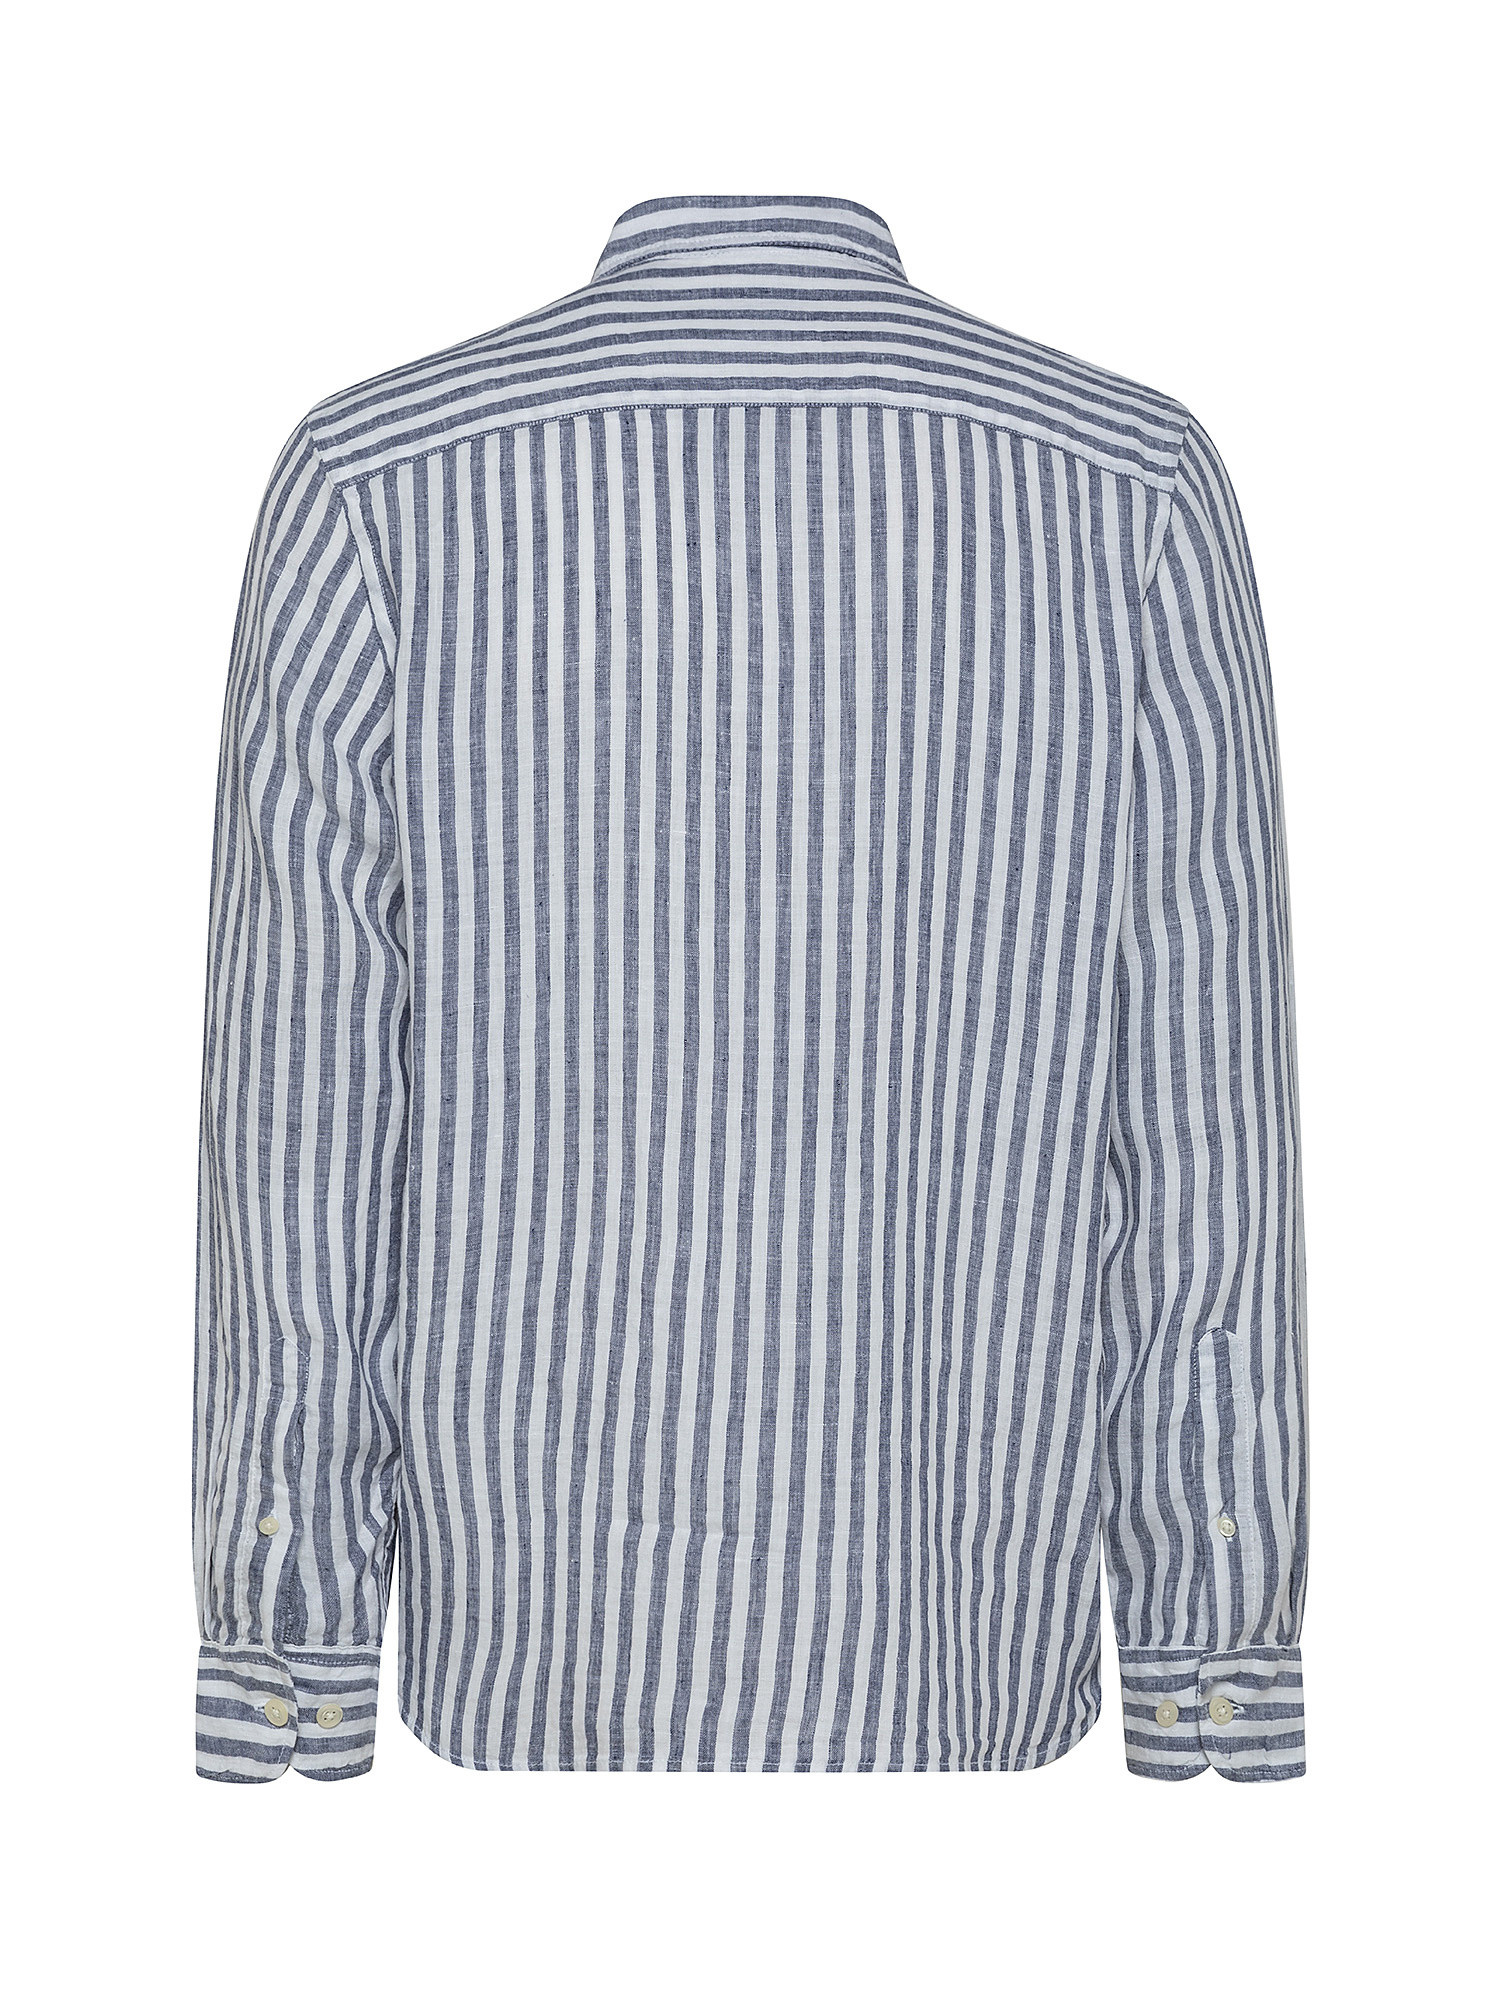 Camicia puro lino collo francese, Blu chiaro, large image number 1